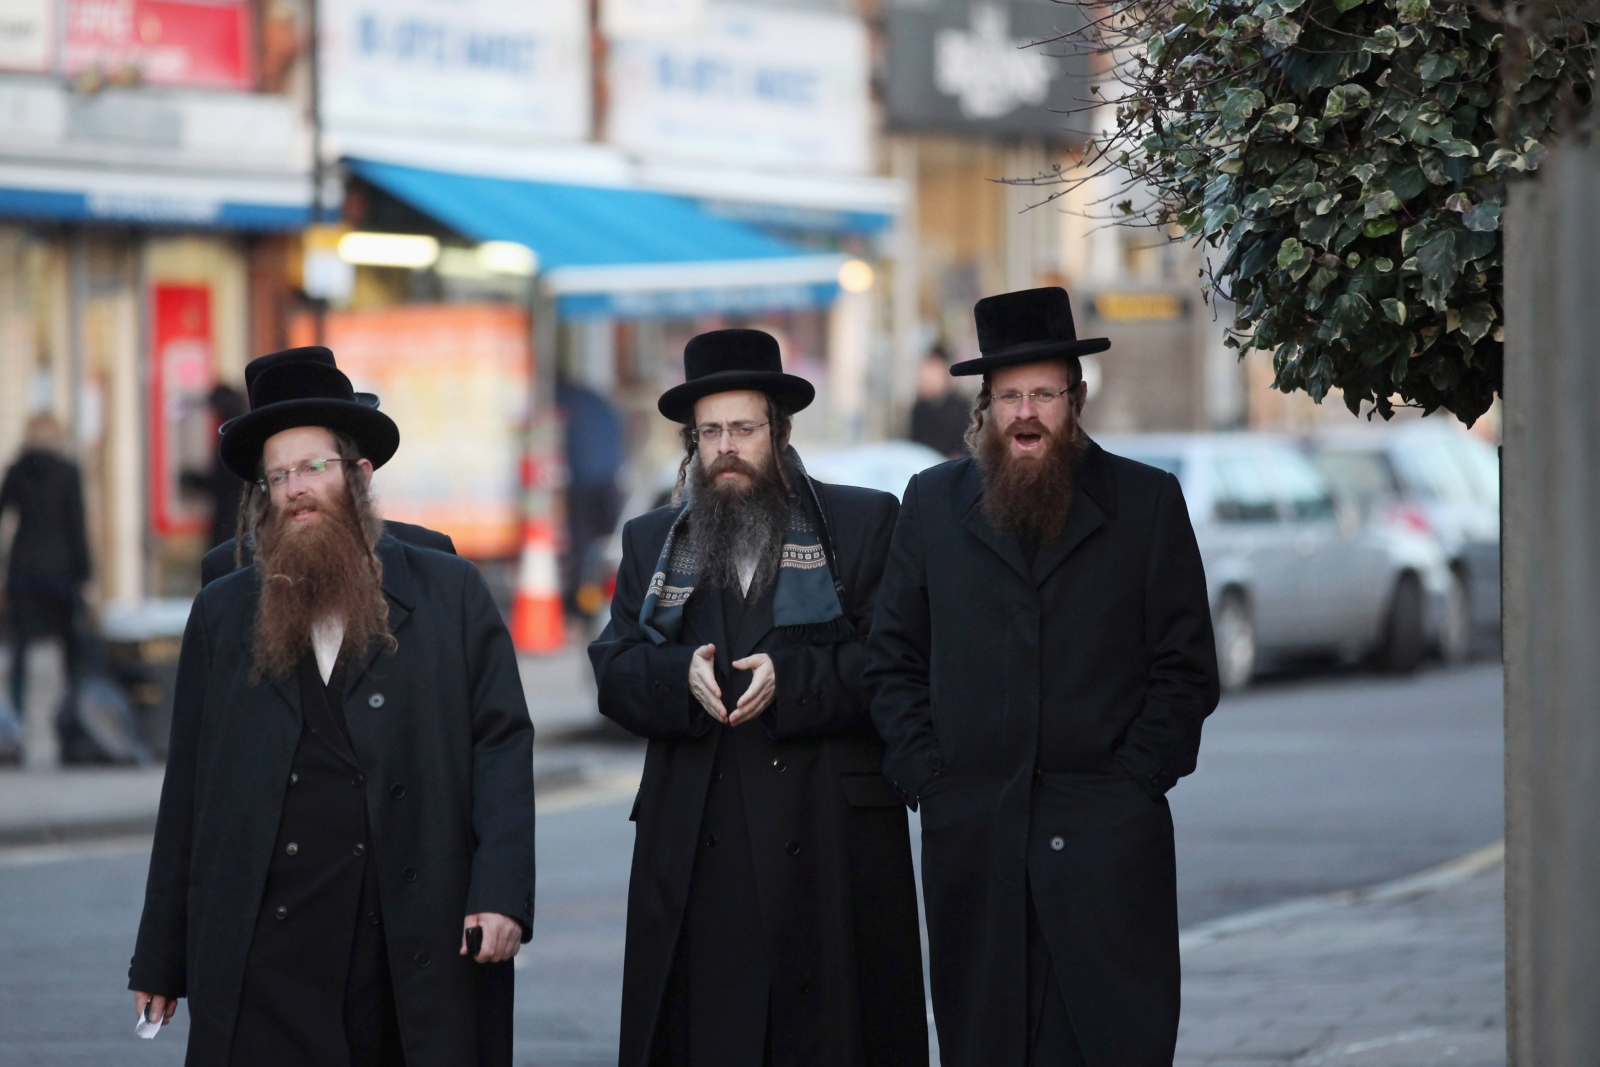 Jews UK